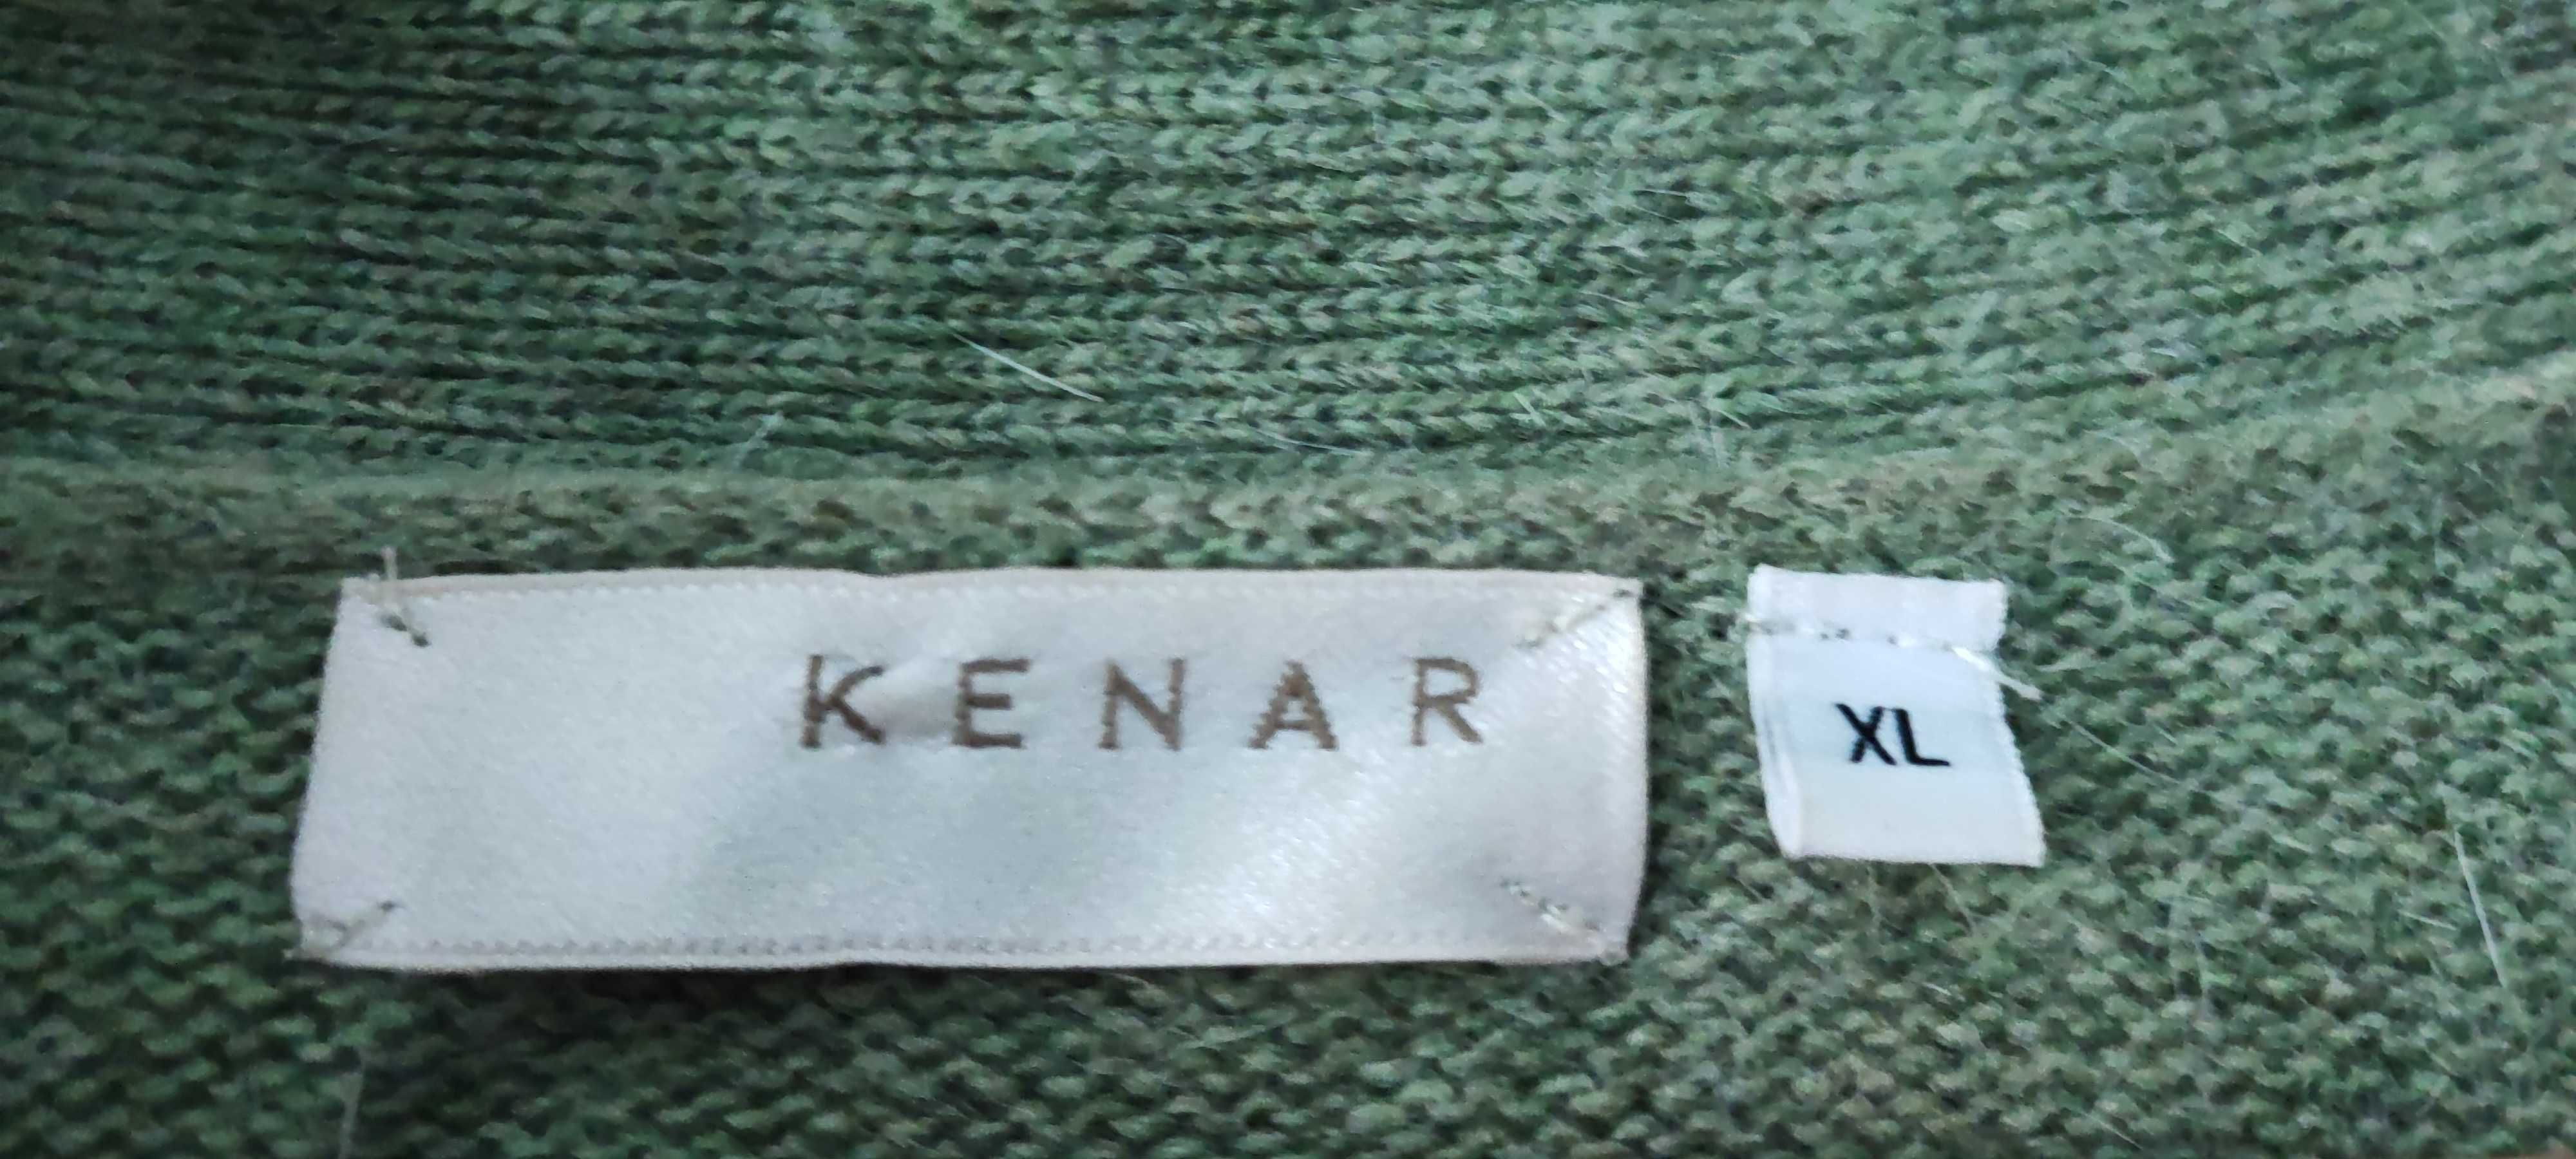 Oliwkowy zielony  sweter damski narzutka kardigan XL